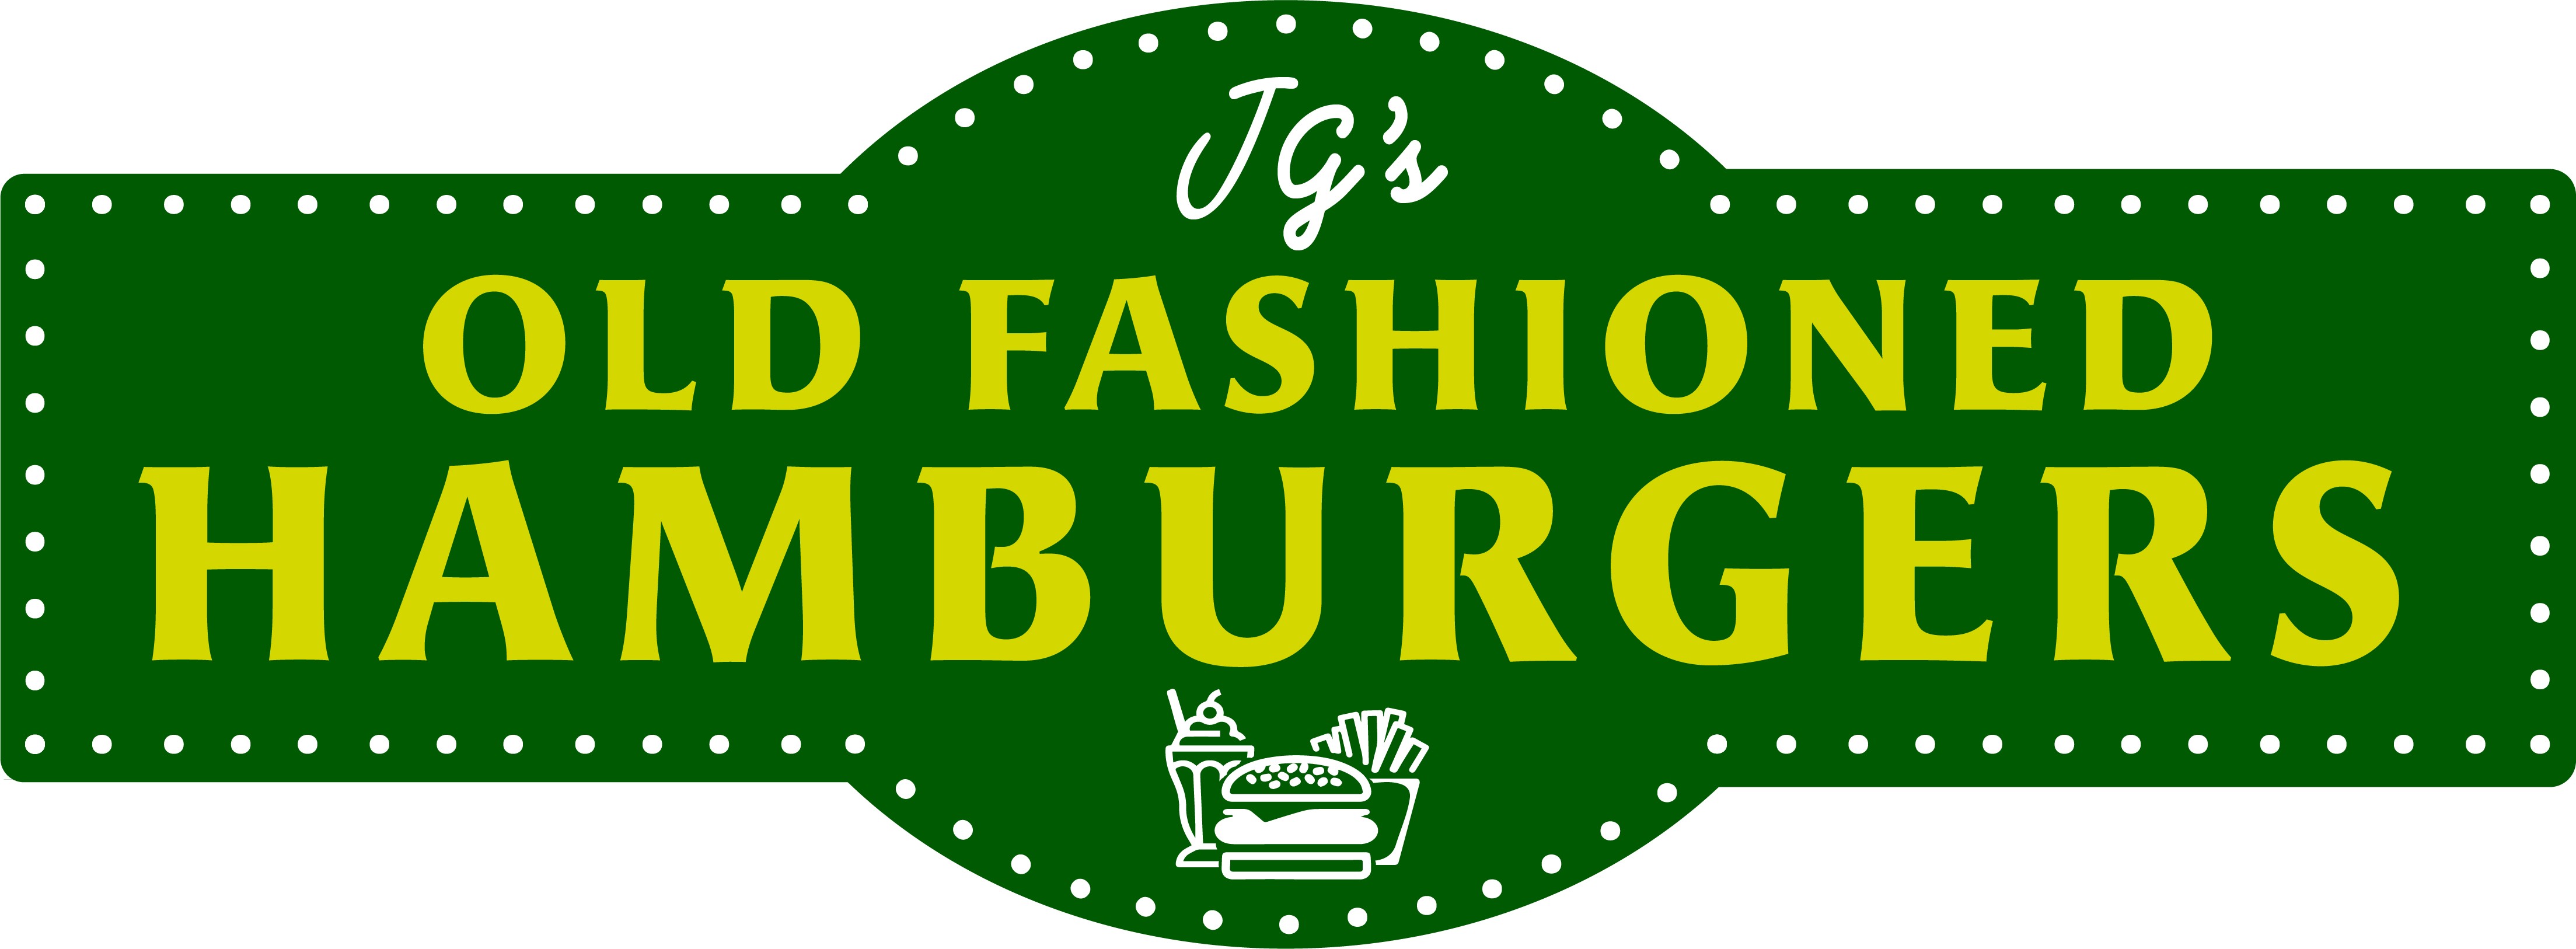 JG’s Old Fashioned Hamburgers